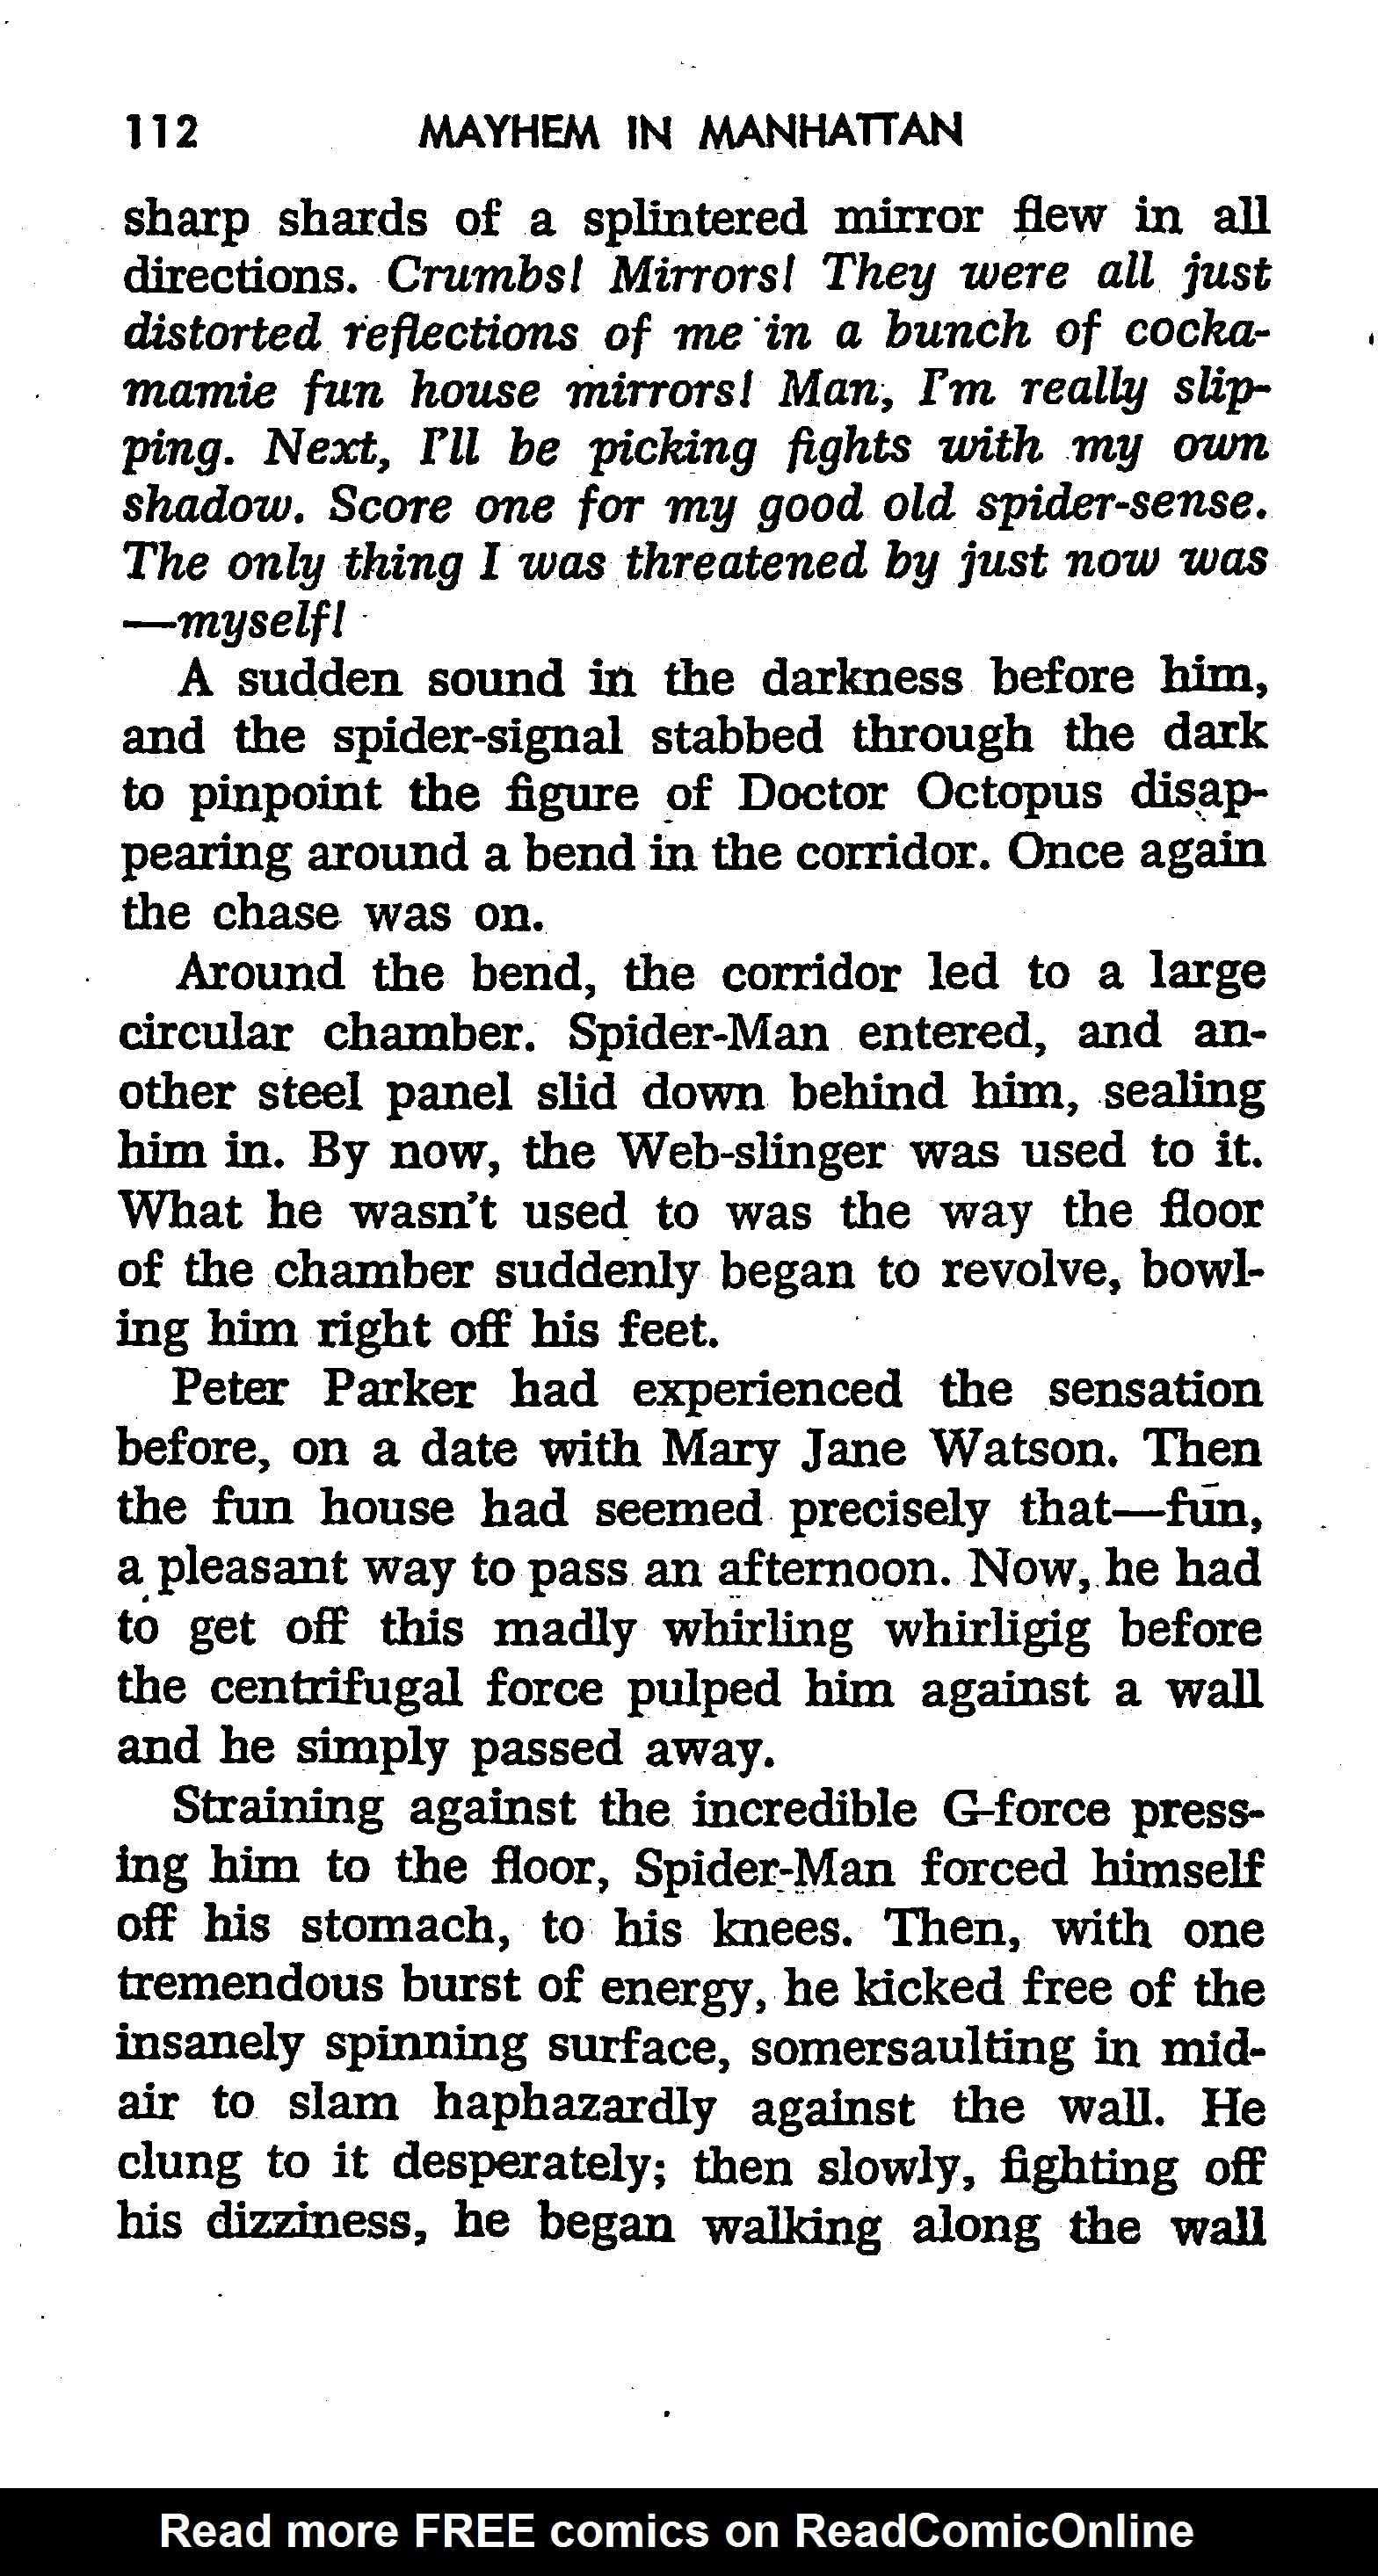 Read online The Amazing Spider-Man: Mayhem in Manhattan comic -  Issue # TPB (Part 2) - 14